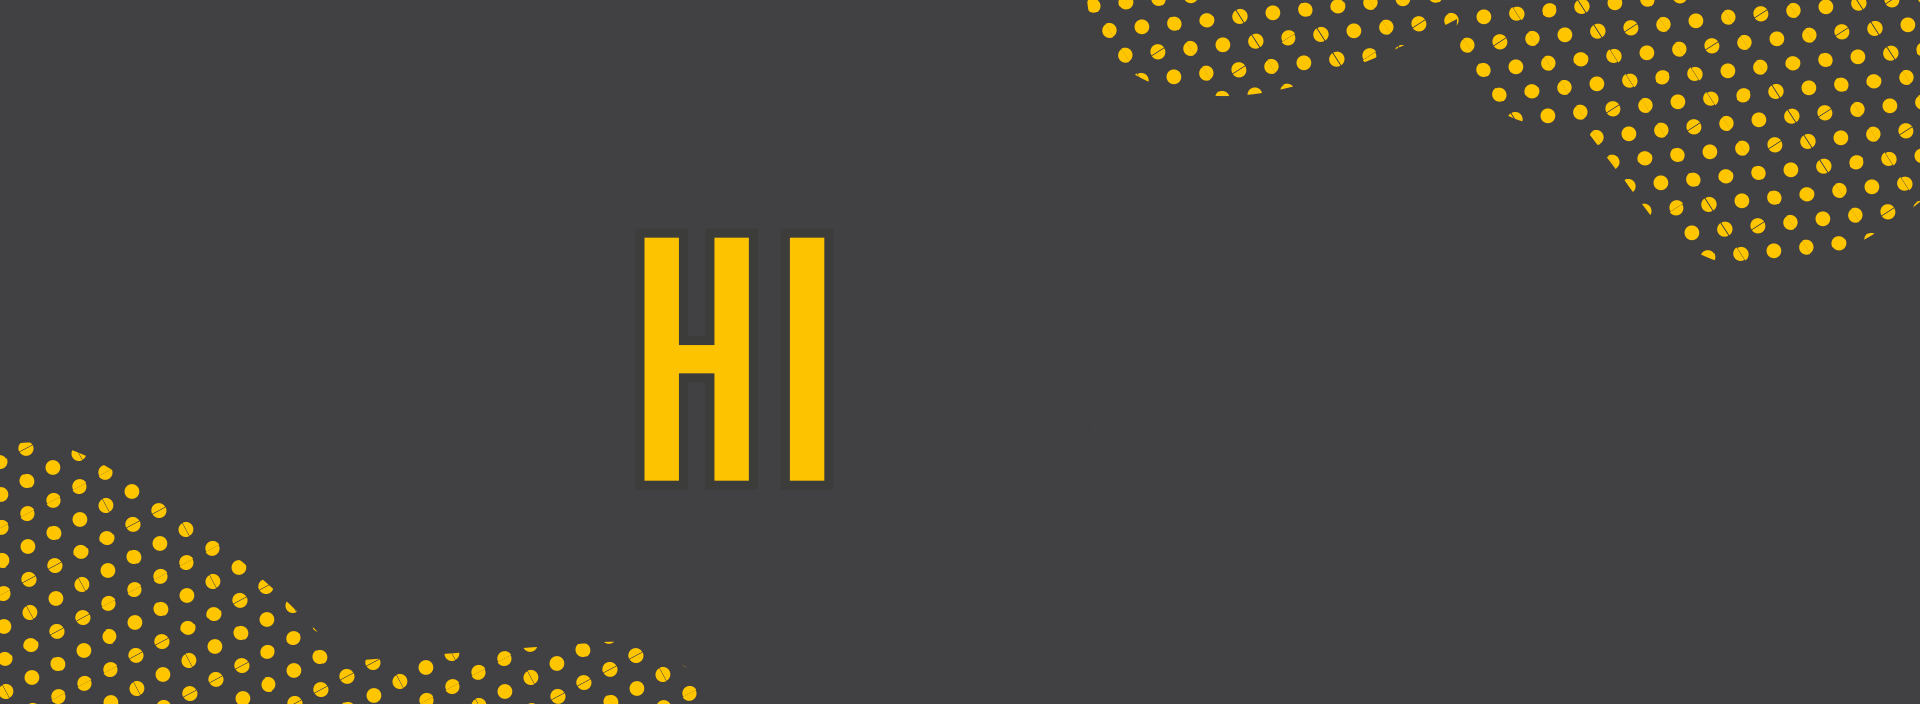 HI-_new-year_homepage_desktop